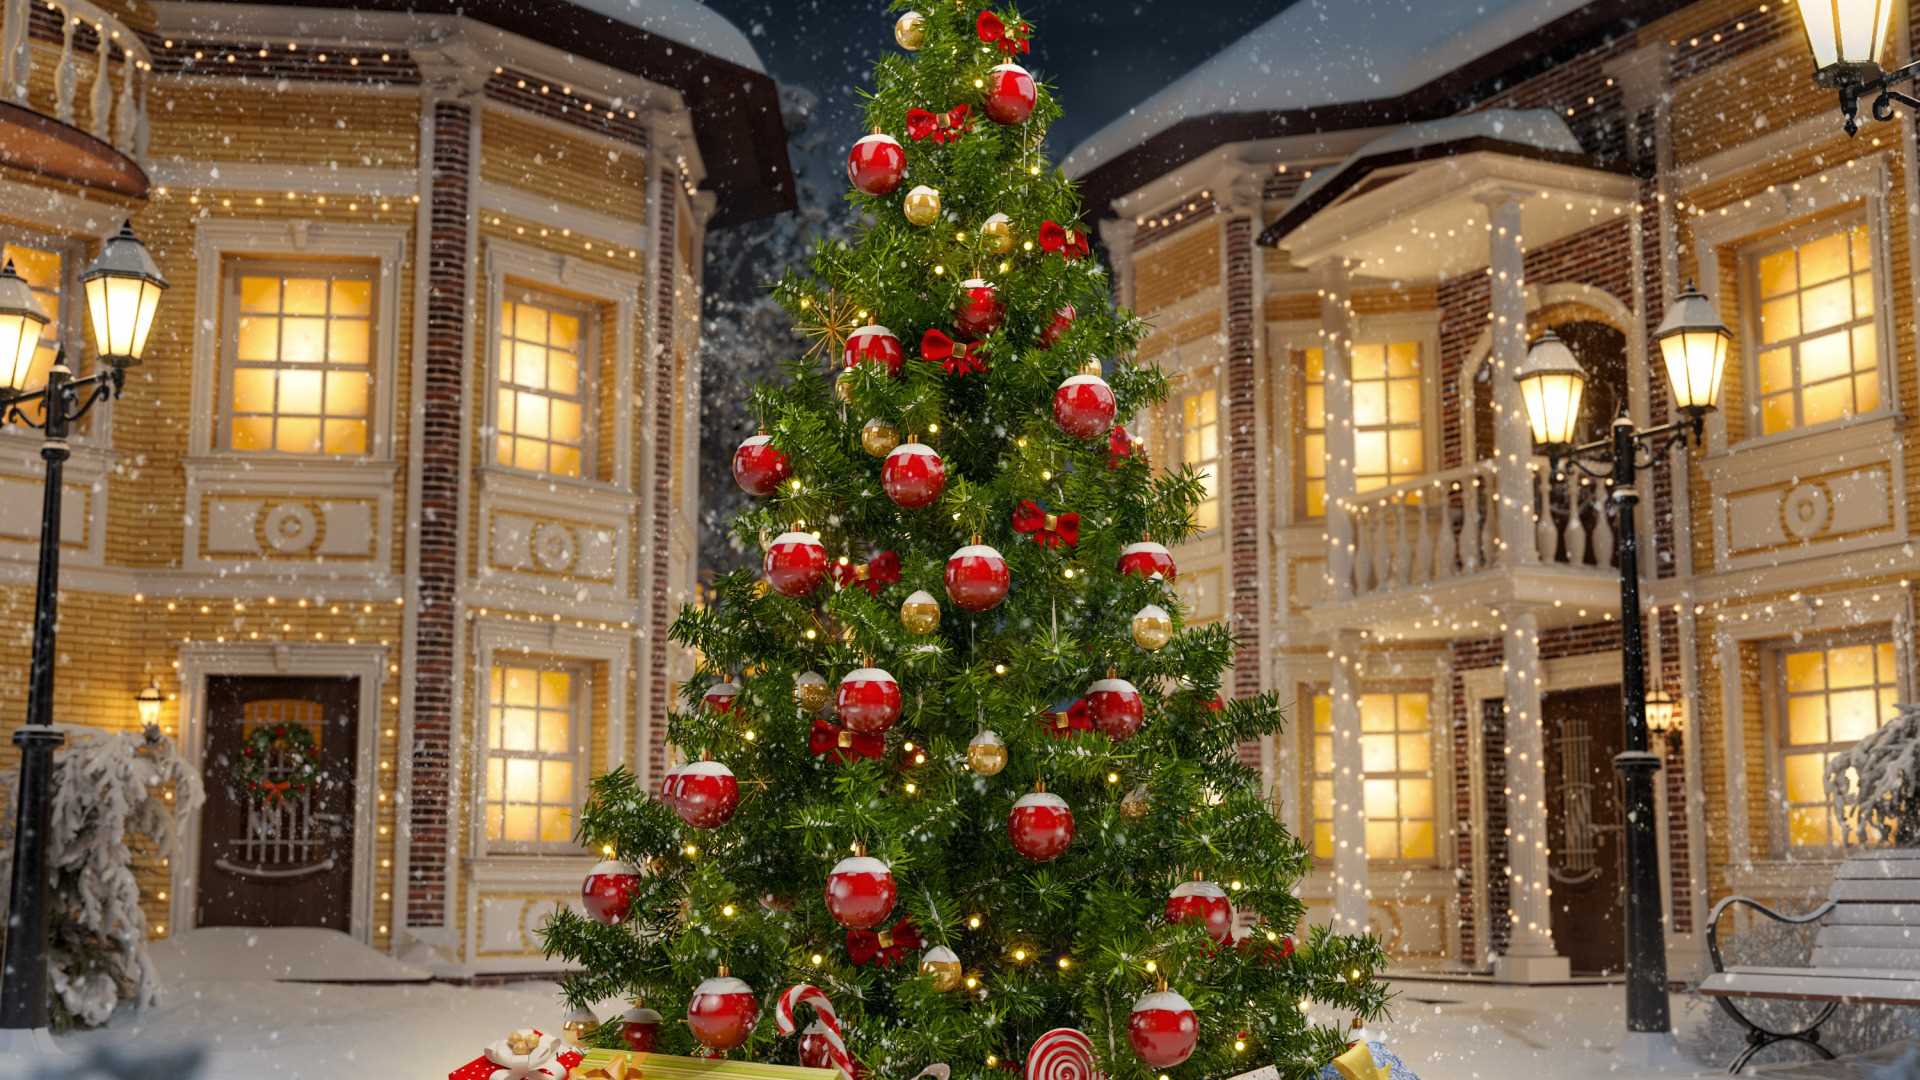 Иллюстрация. В центре картины стоит празднично украшенная елка. У ее основания лежат коробки с подарками. На заднем фоне -  украшенные  дома, покрытые снегом.